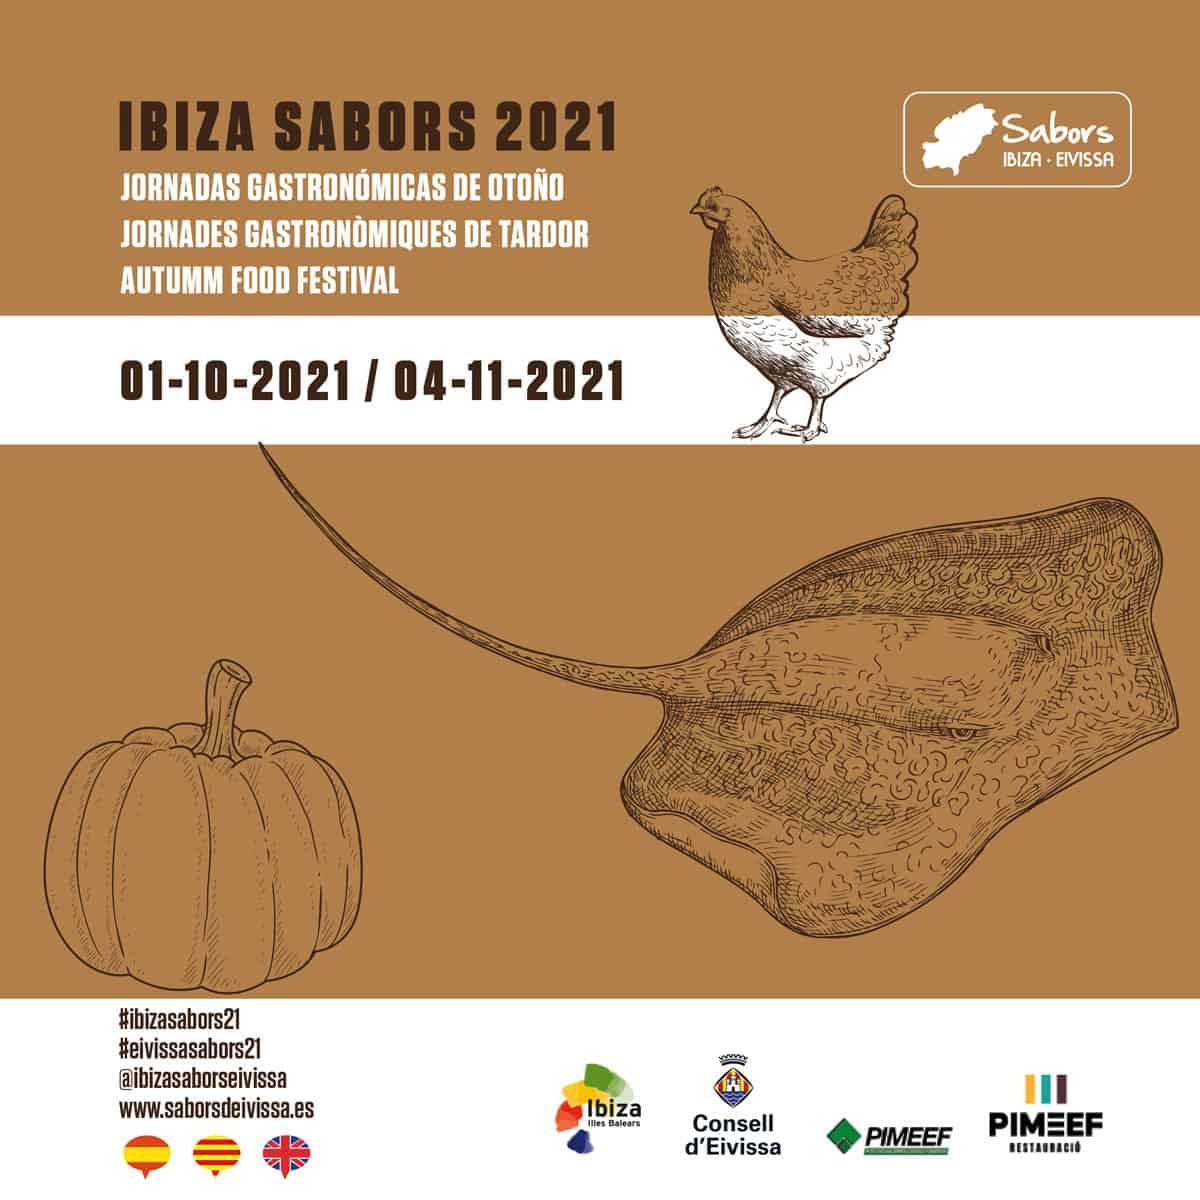 journées-gastronomiques-automne-ibiza-sabors-2021-welcometoibiza